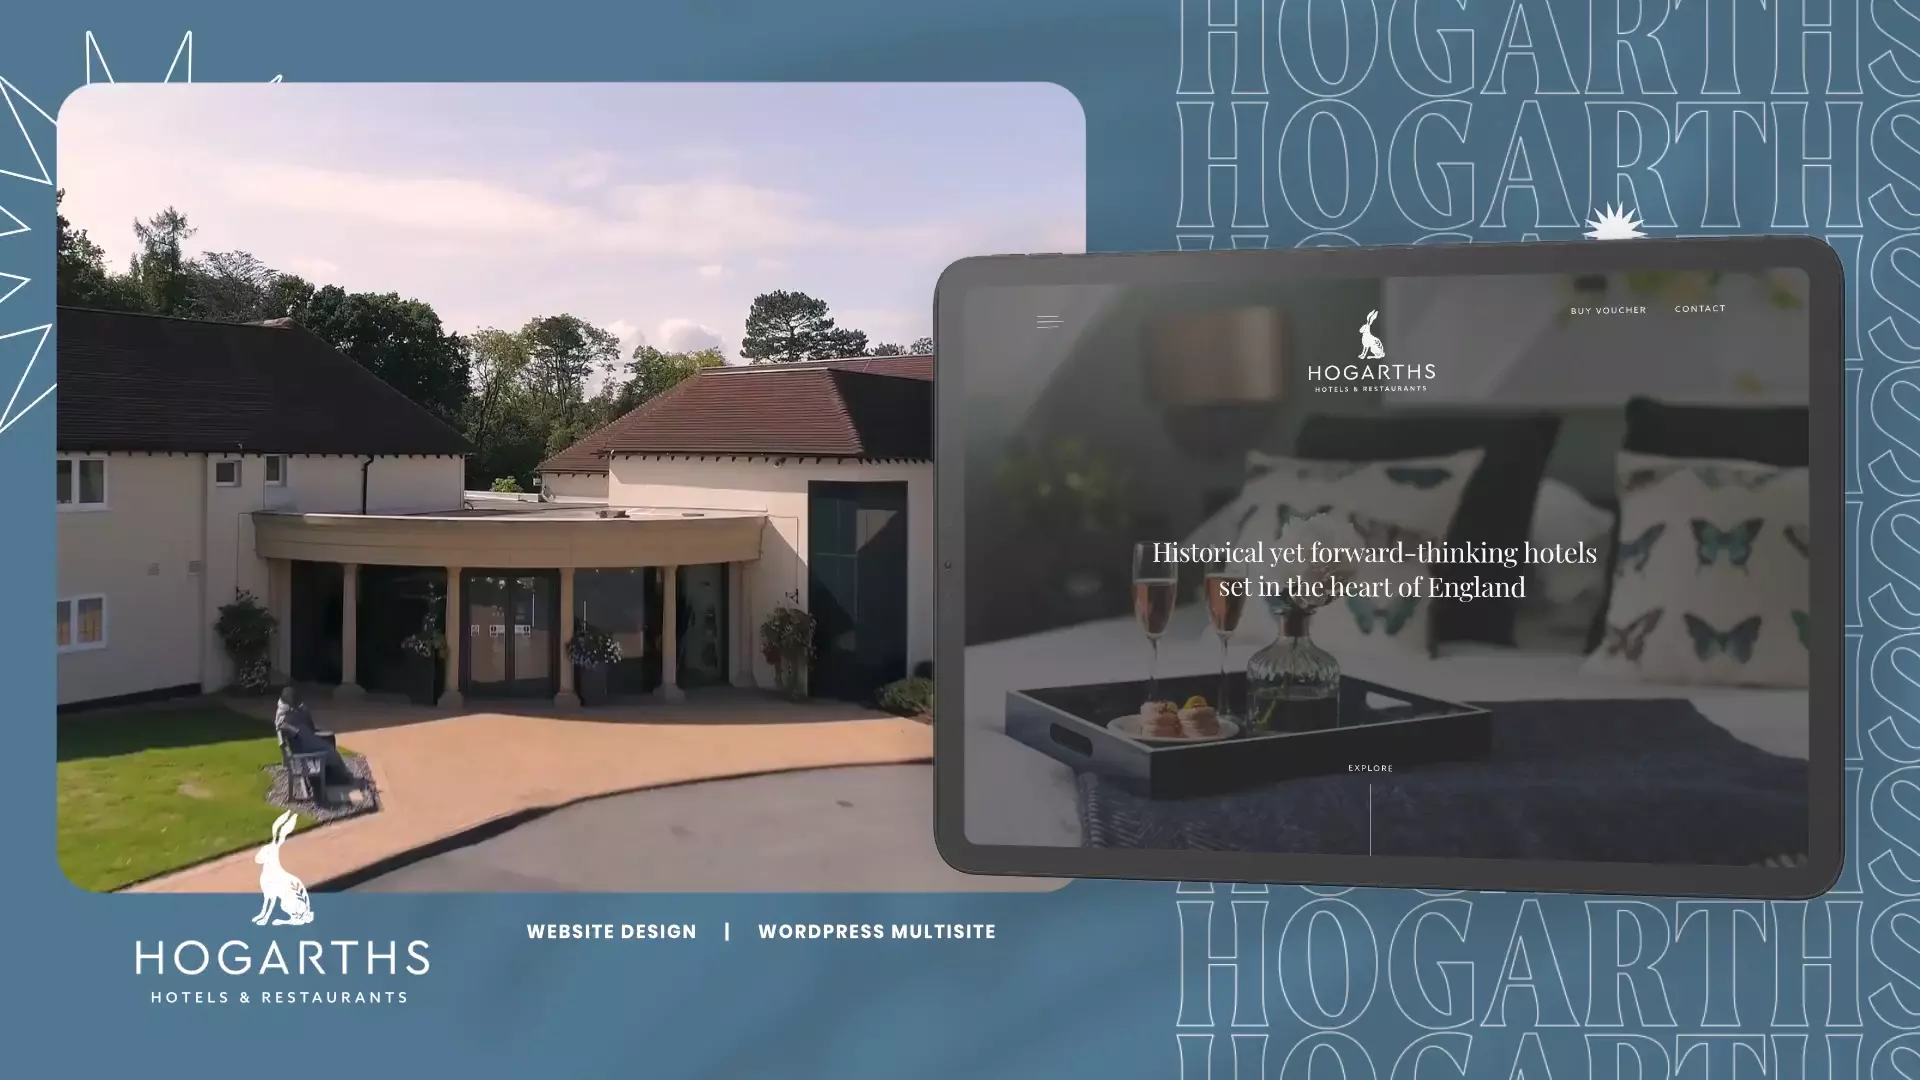 Hogarths website mockup featured image widescreen